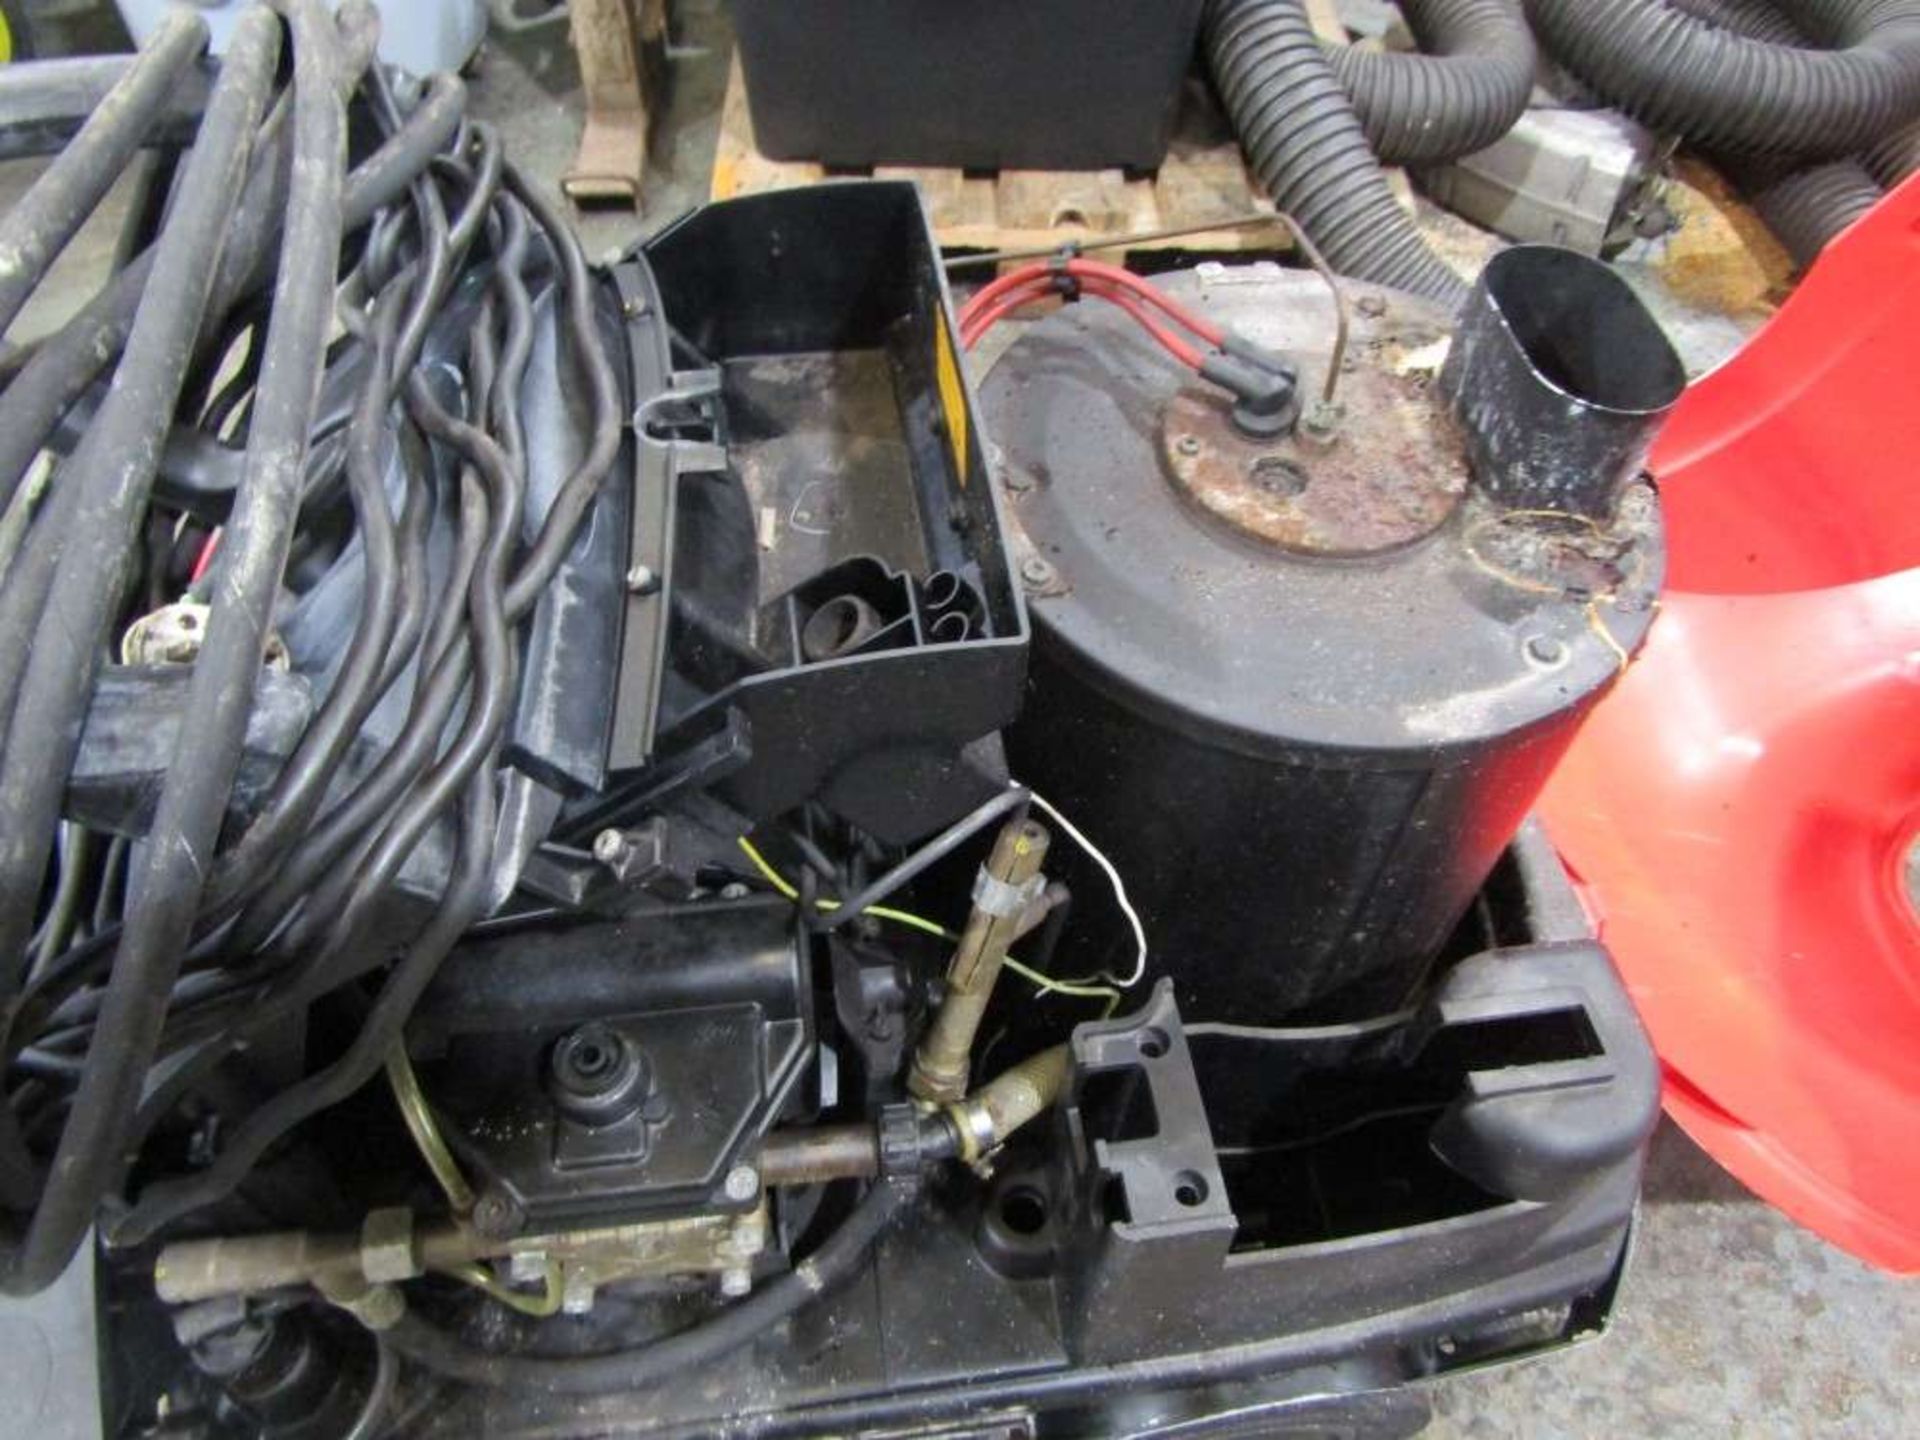 Karcher 601 Diesel Pressure Washer - Snap on Edition c/w Lance & Hose - Bild 2 aus 2